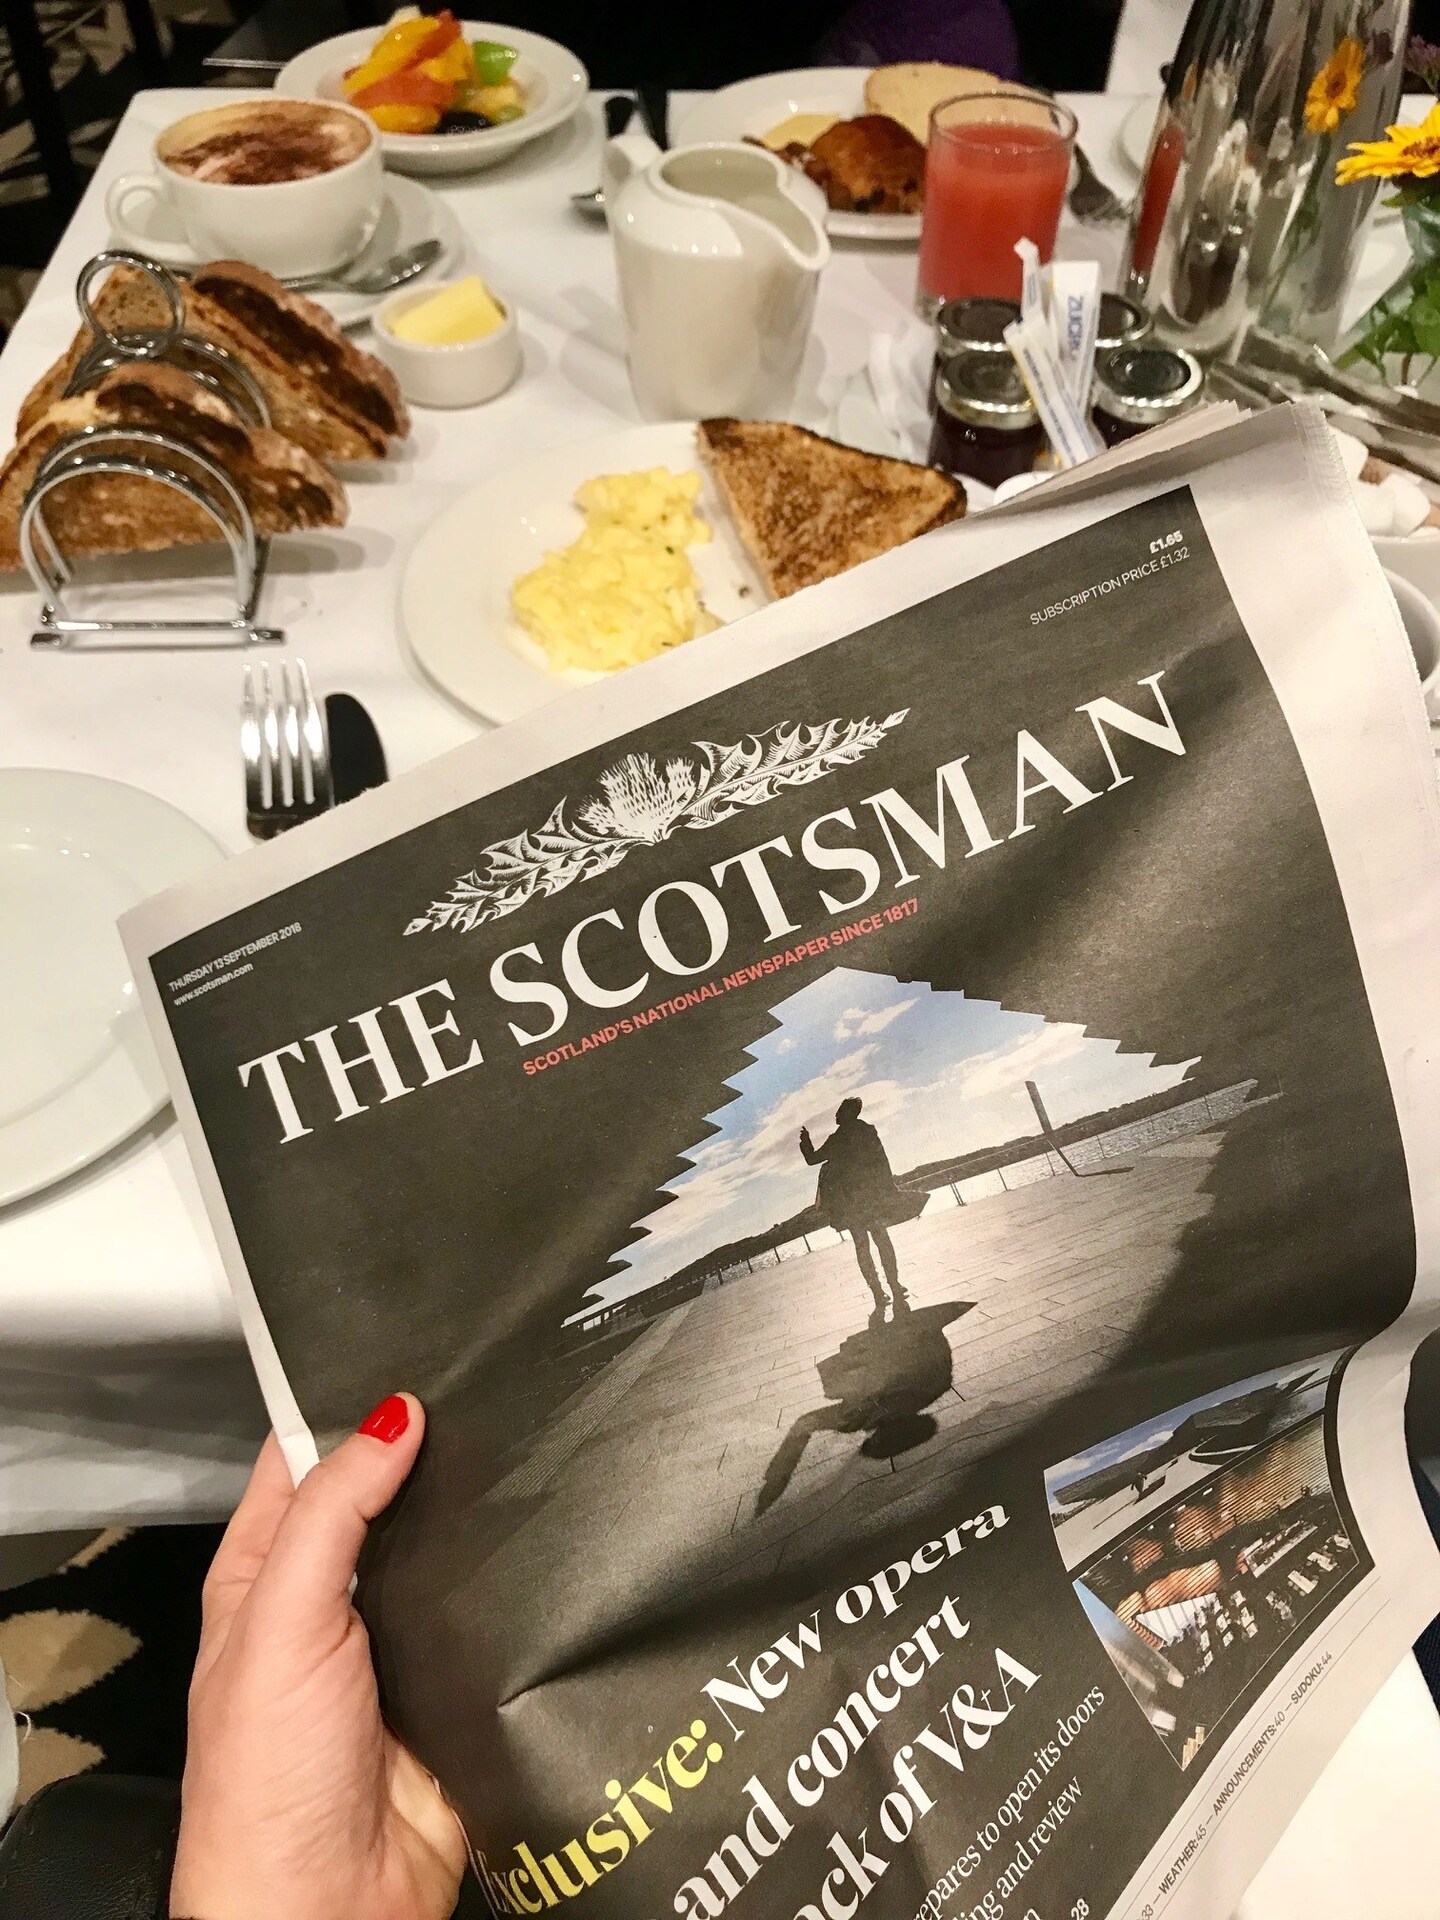 Jornal The Scotsman, um dos maiores da Escócia, no café da manhã do hotel de mesmo nome, neste dia, a capa foi o novíssimo V&A Dundee